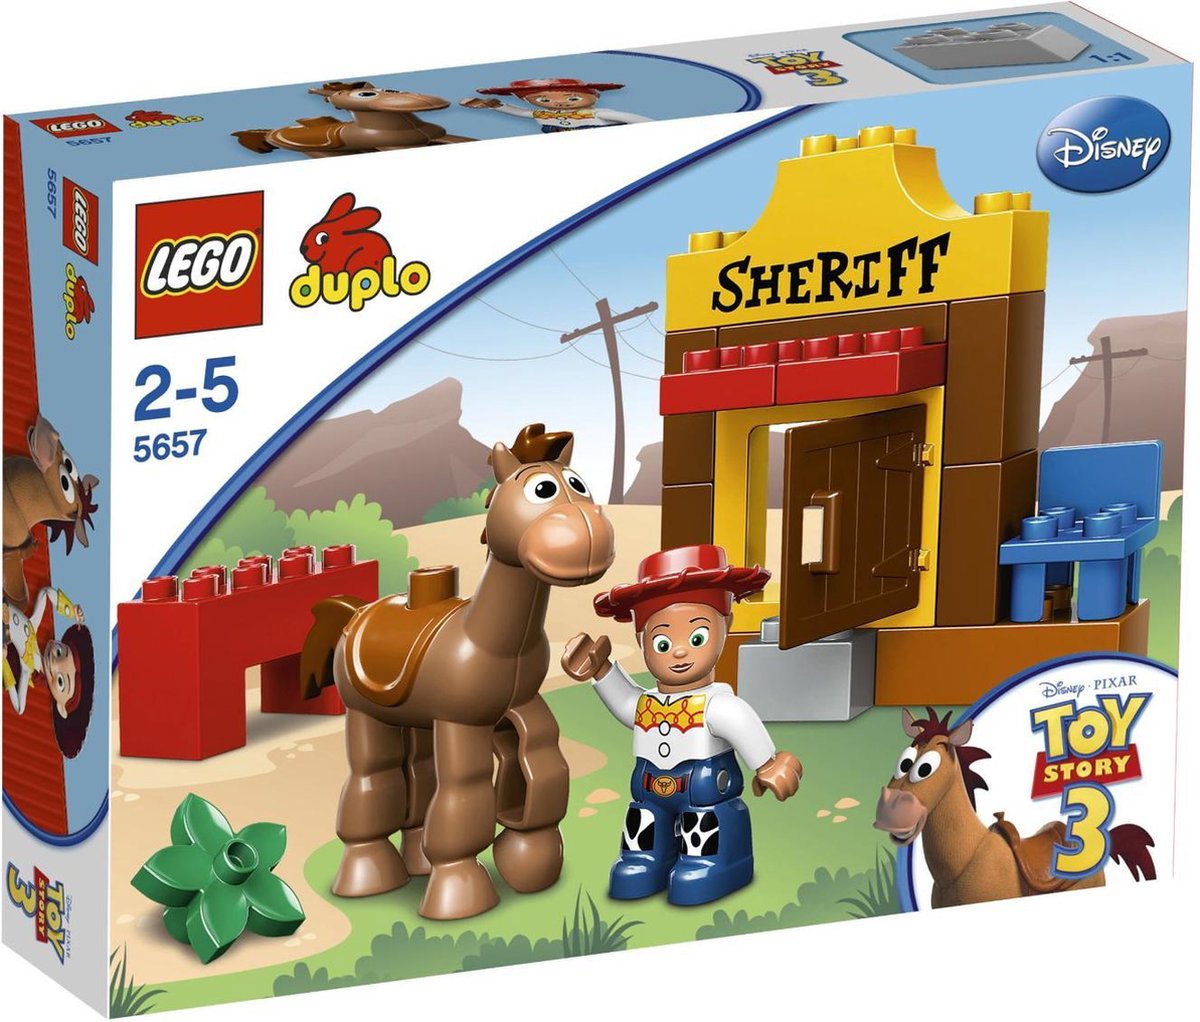 LEGO DUPLO Toy Story 3 Jessie Houdt de Wacht - 5657